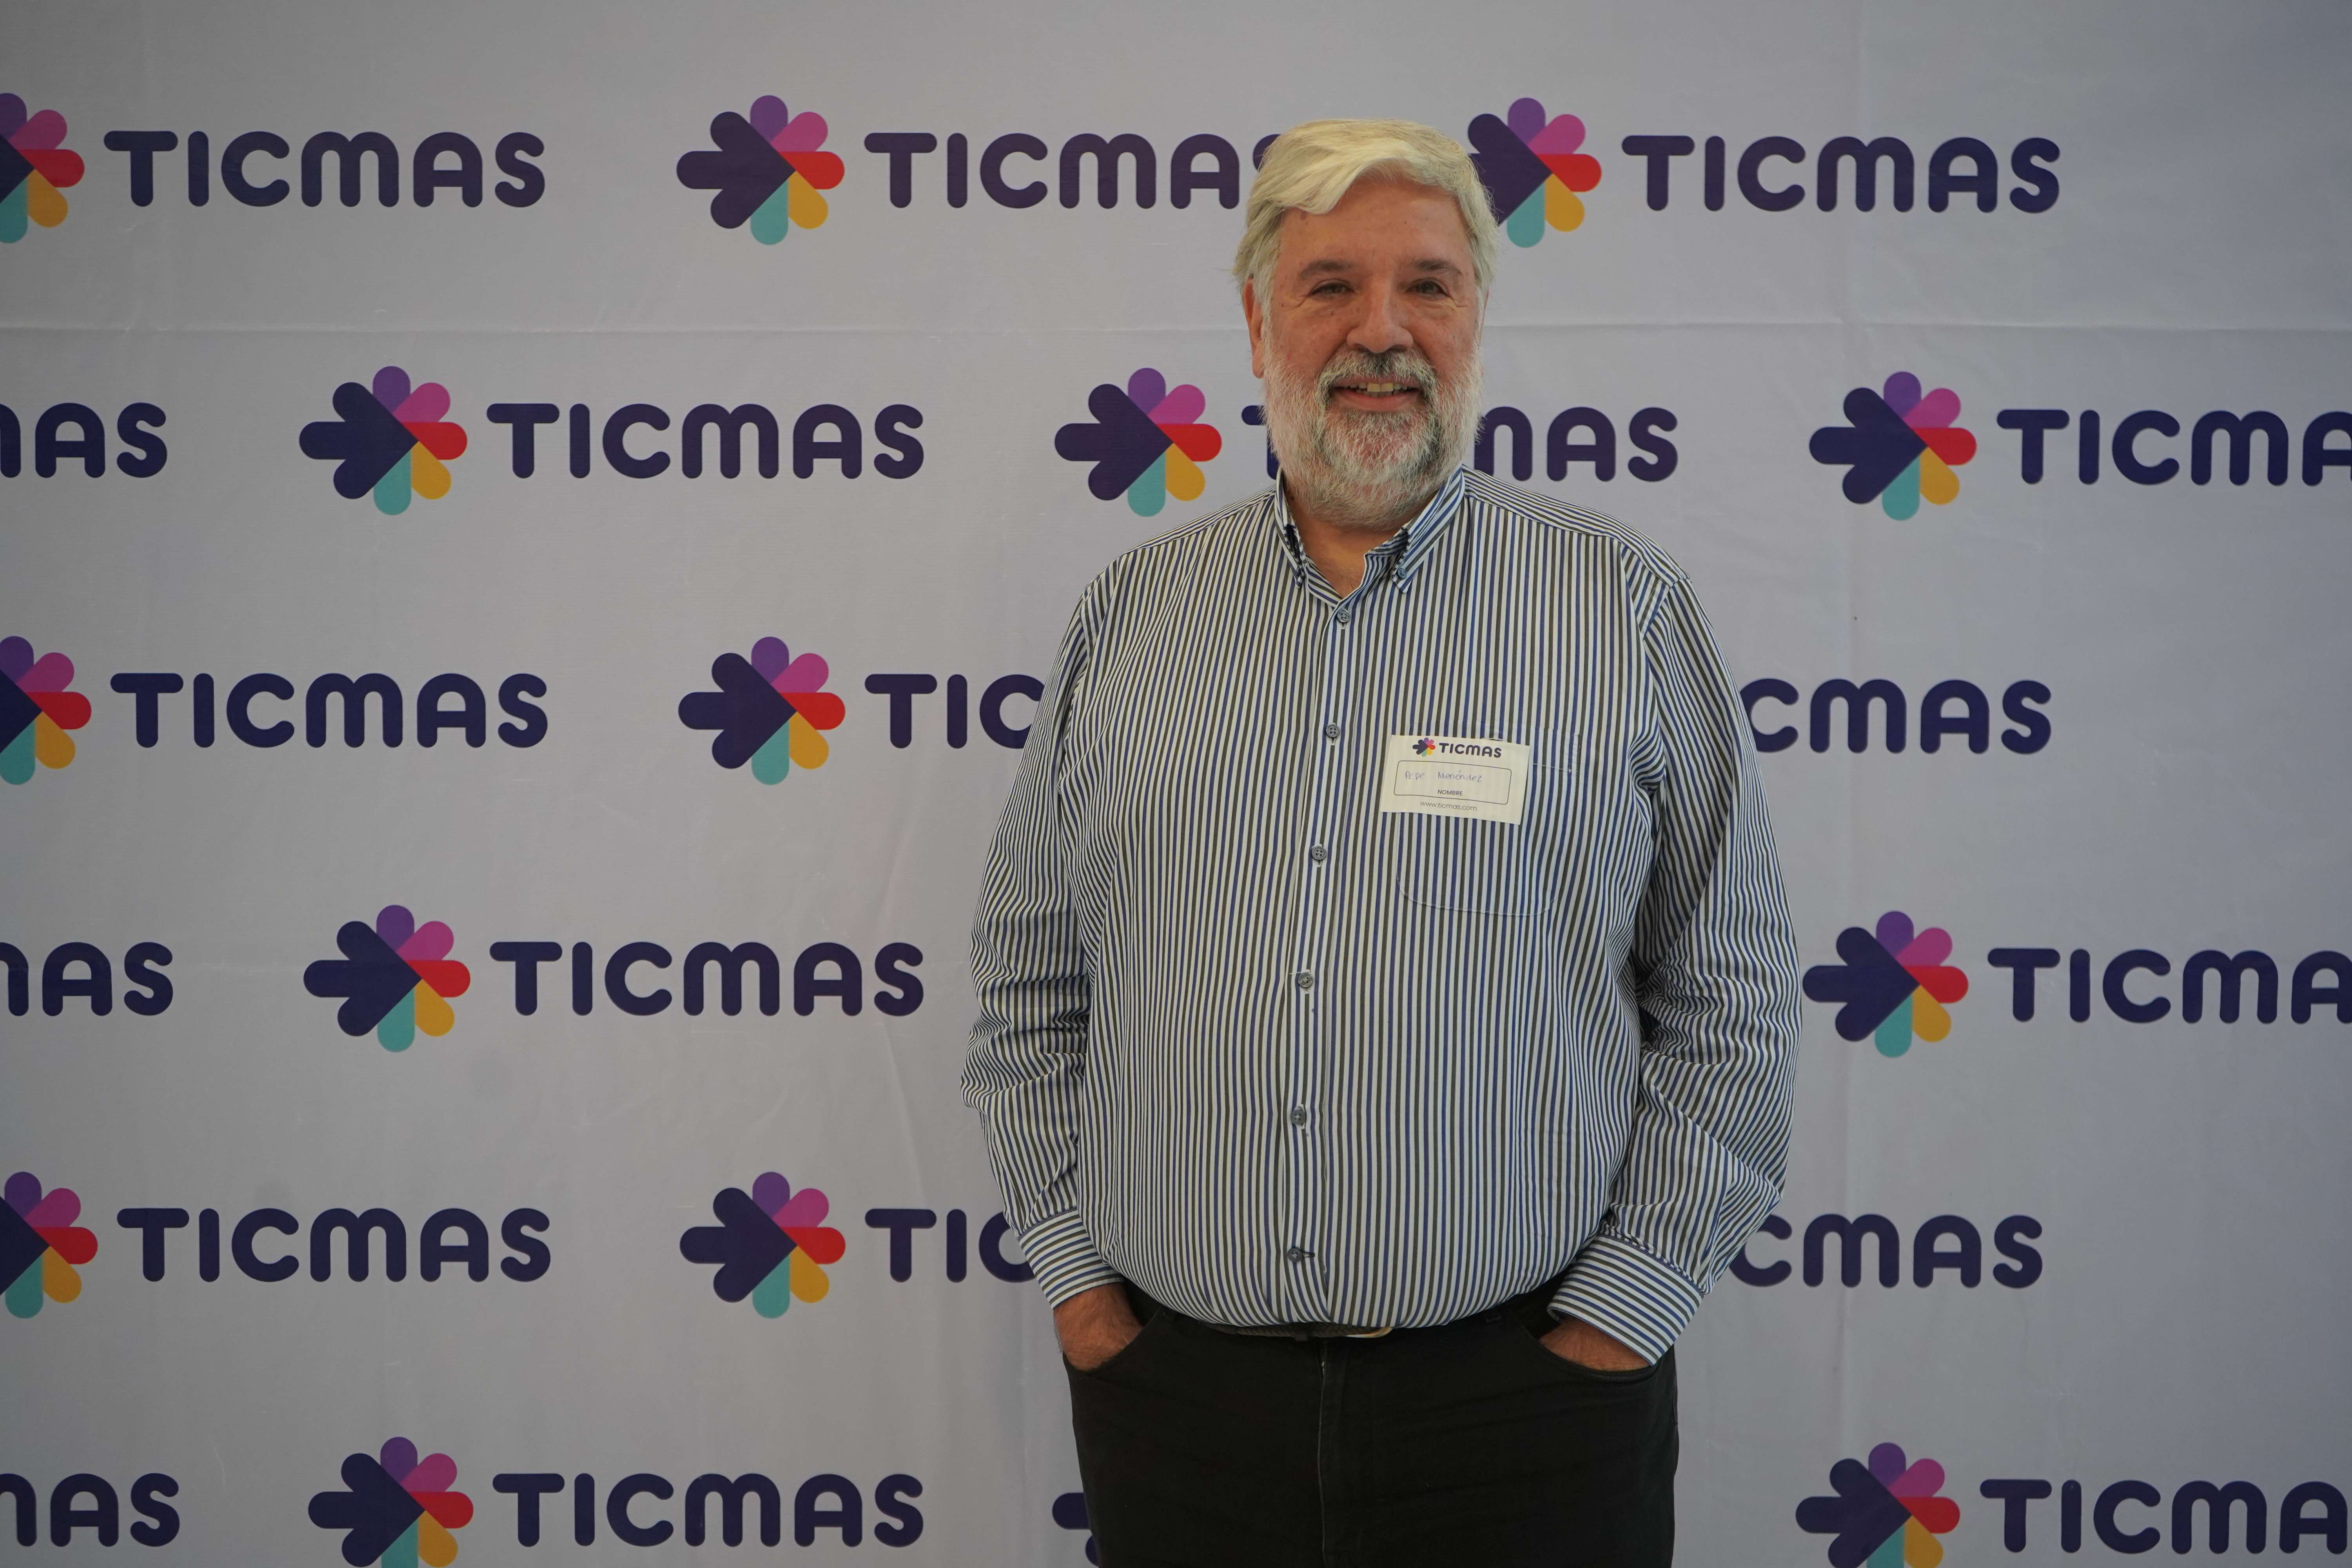 Pepe Menéndez en la jornada "Imagina la educación", que organizó Ticmas en Ciudad de México